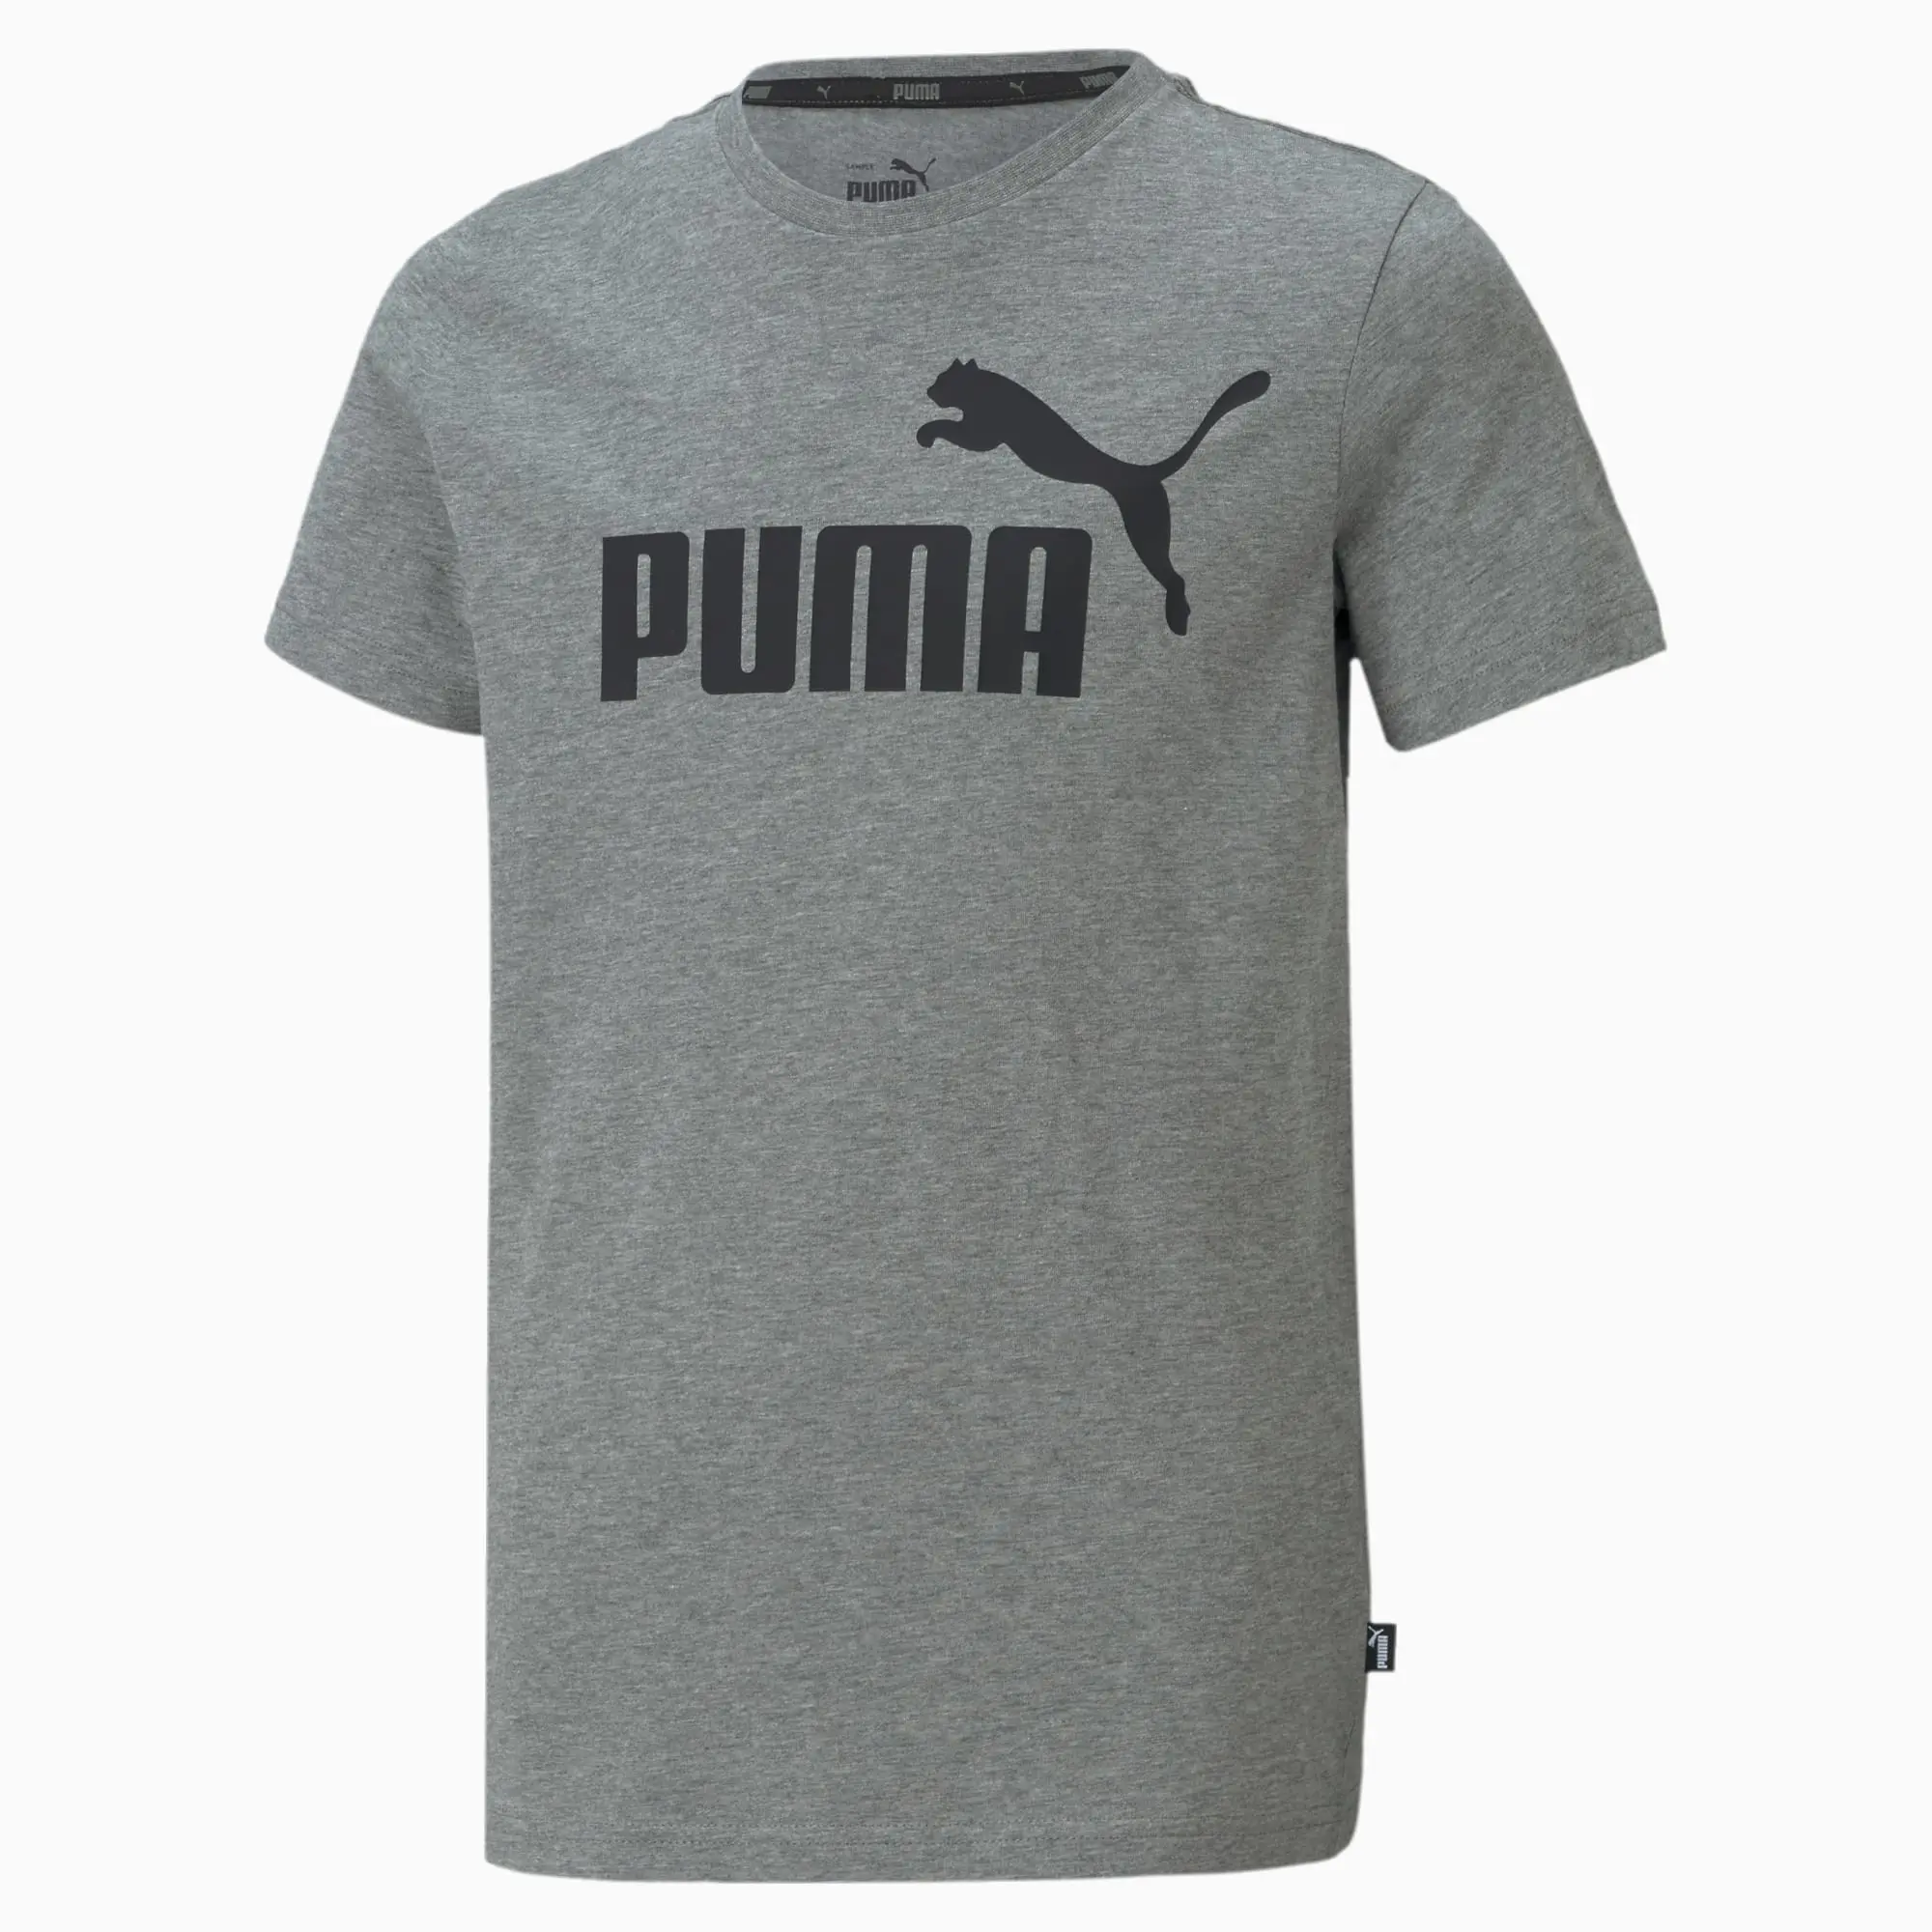 Puma Childrens Unisex Essentials Logo Youth Tee - Grey Cotton